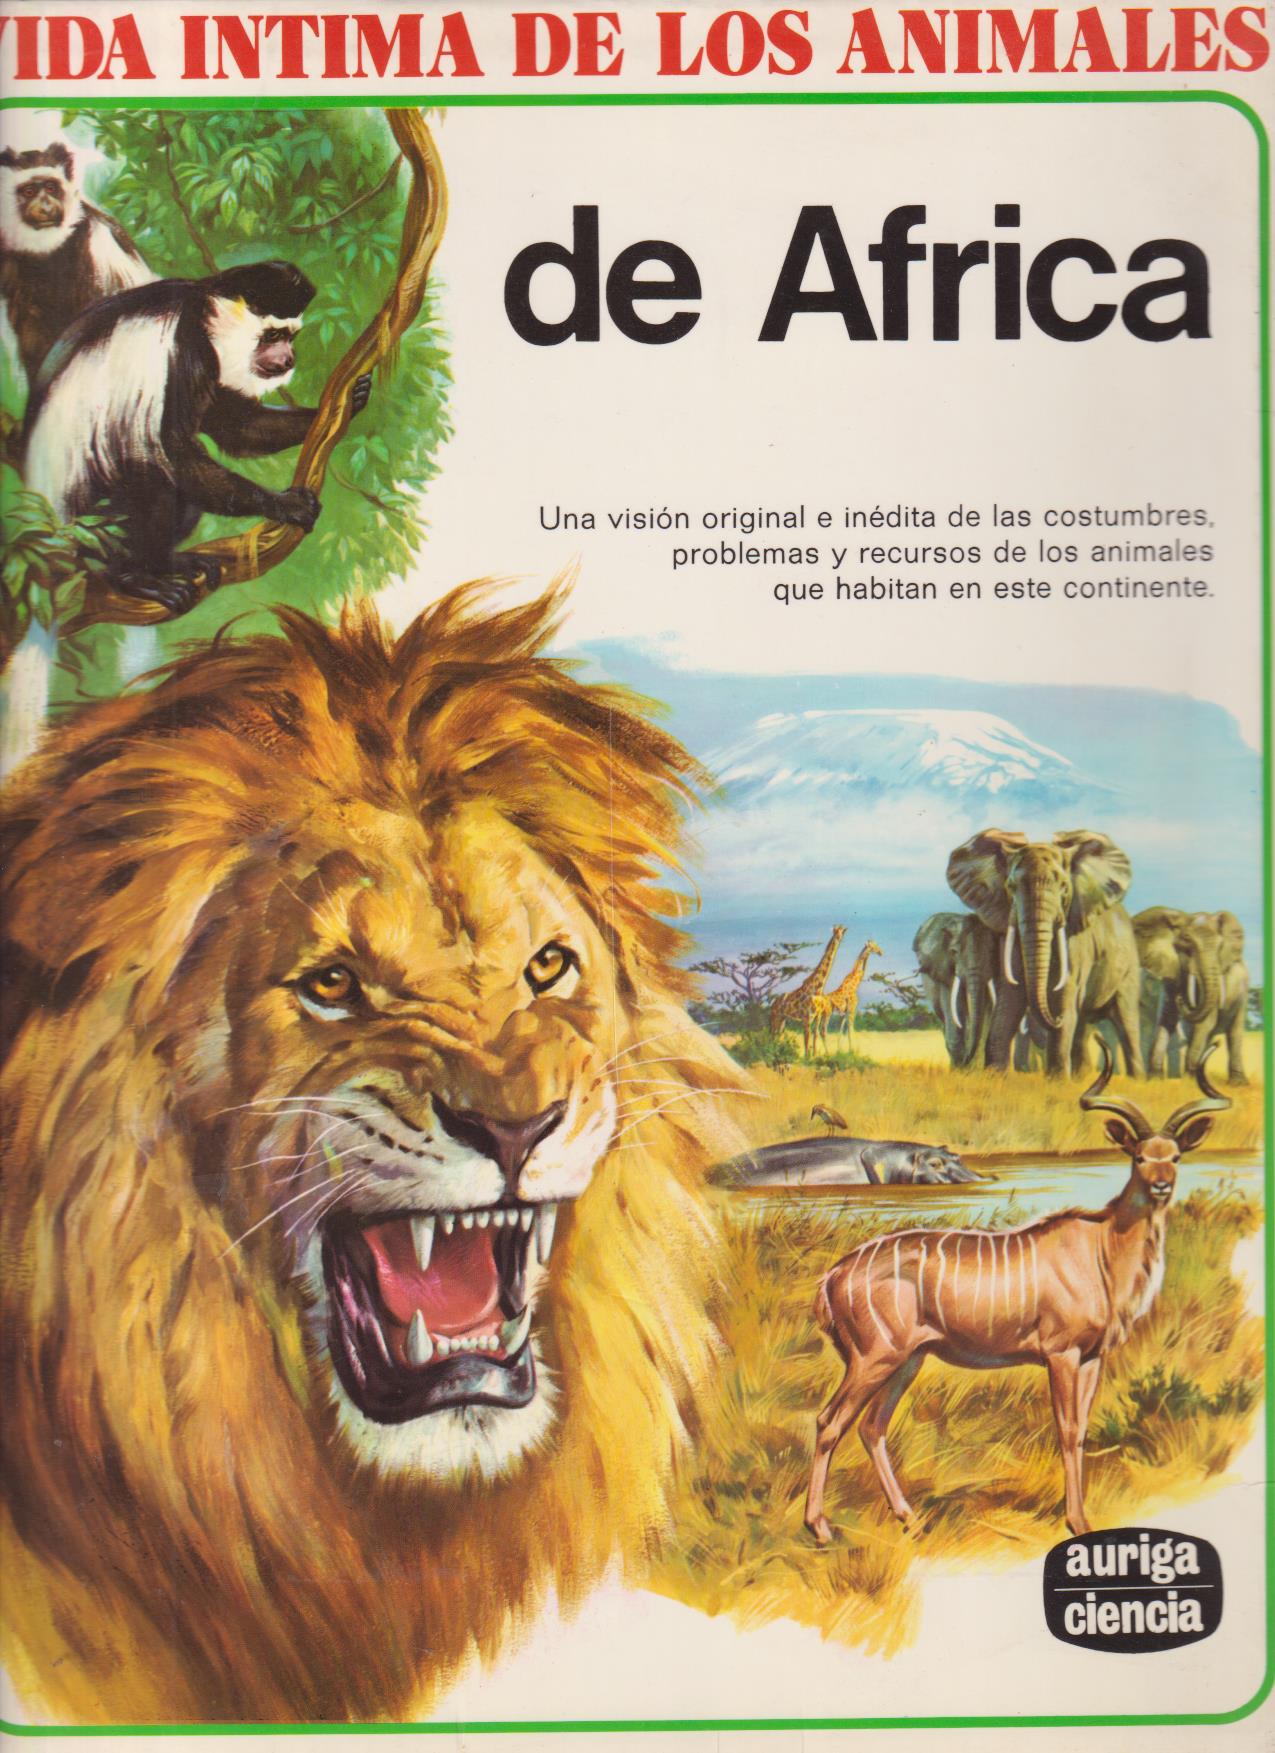 Vida íntima de los Animales de África. Auriga-Ciencia, 1990